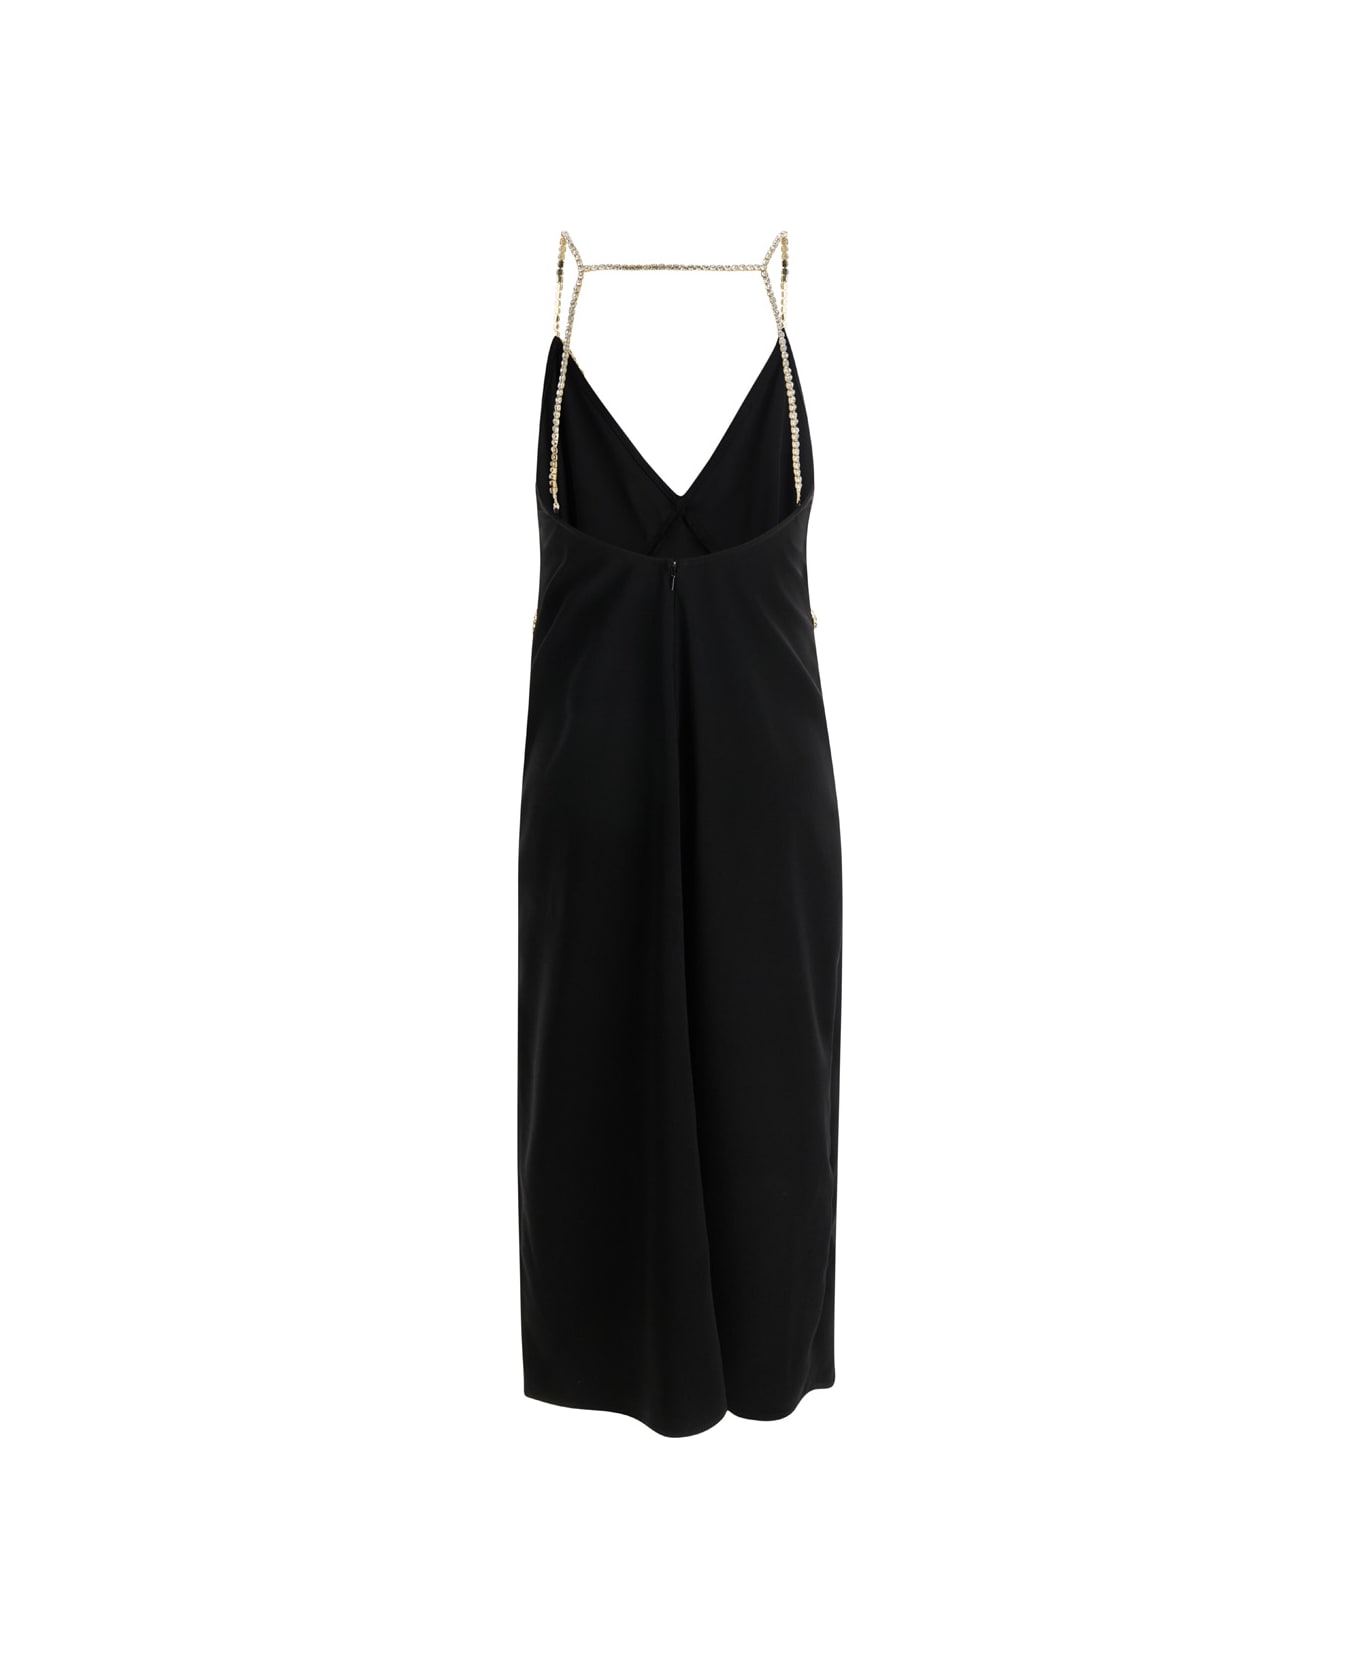 Liu-Jo Black Midi Dress With Rhinestone Straps In Crepe Fabric Woman Liu-Jo - BLACK ワンピース＆ドレス